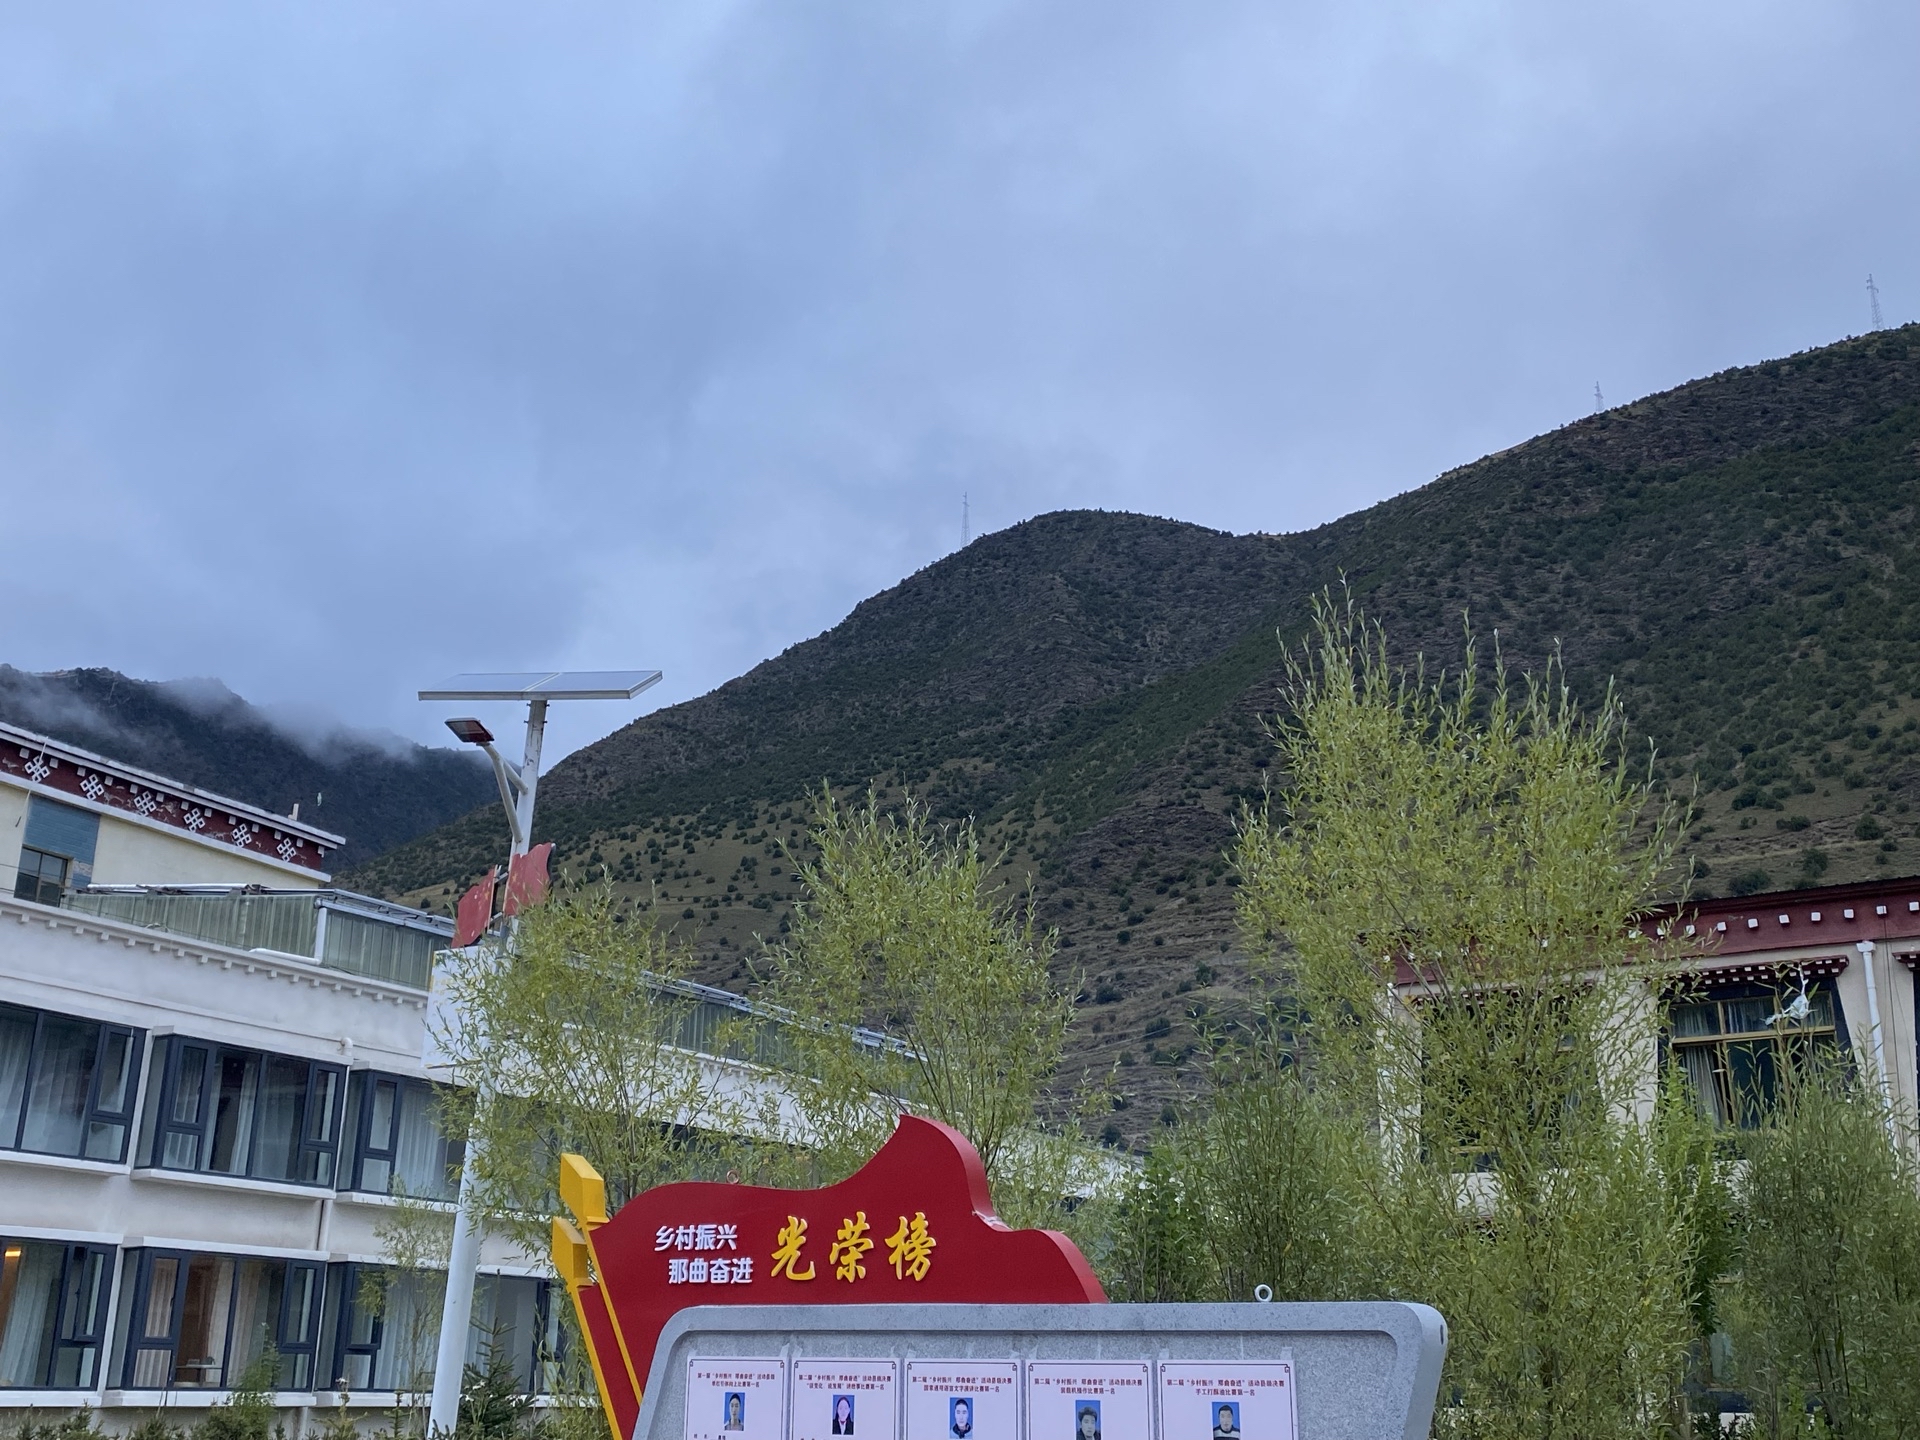 没想到在西藏偏远的这个地方酒店这么好，有制氧机，房间特别暖和，我跟闺蜜一人一个房间，感觉都没高反了。